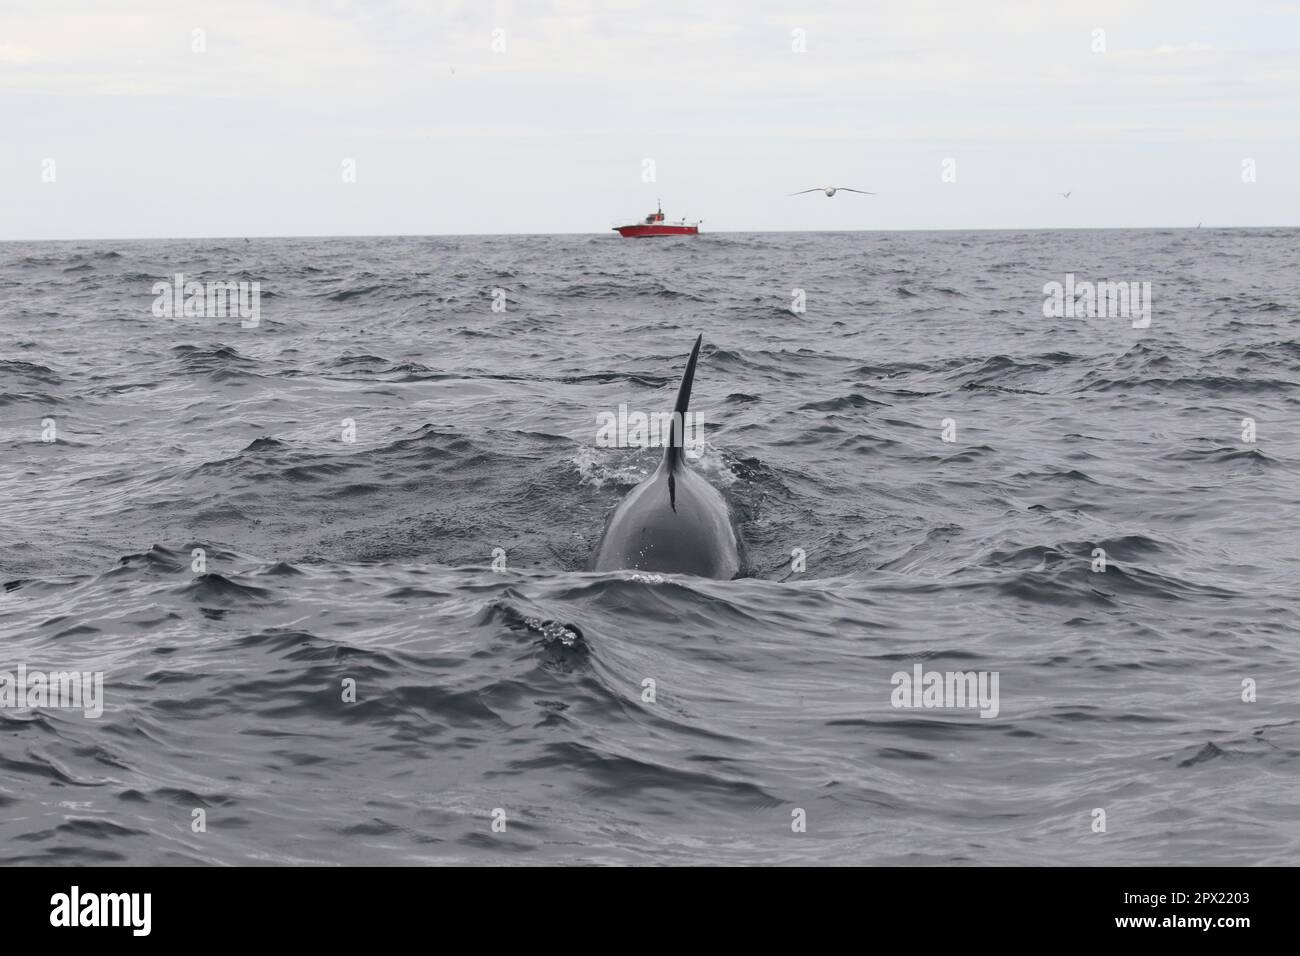 Fotos wurden während einer Killerwal-Forschungsreise rund um die Westman Islands, Island, gemacht Stockfoto